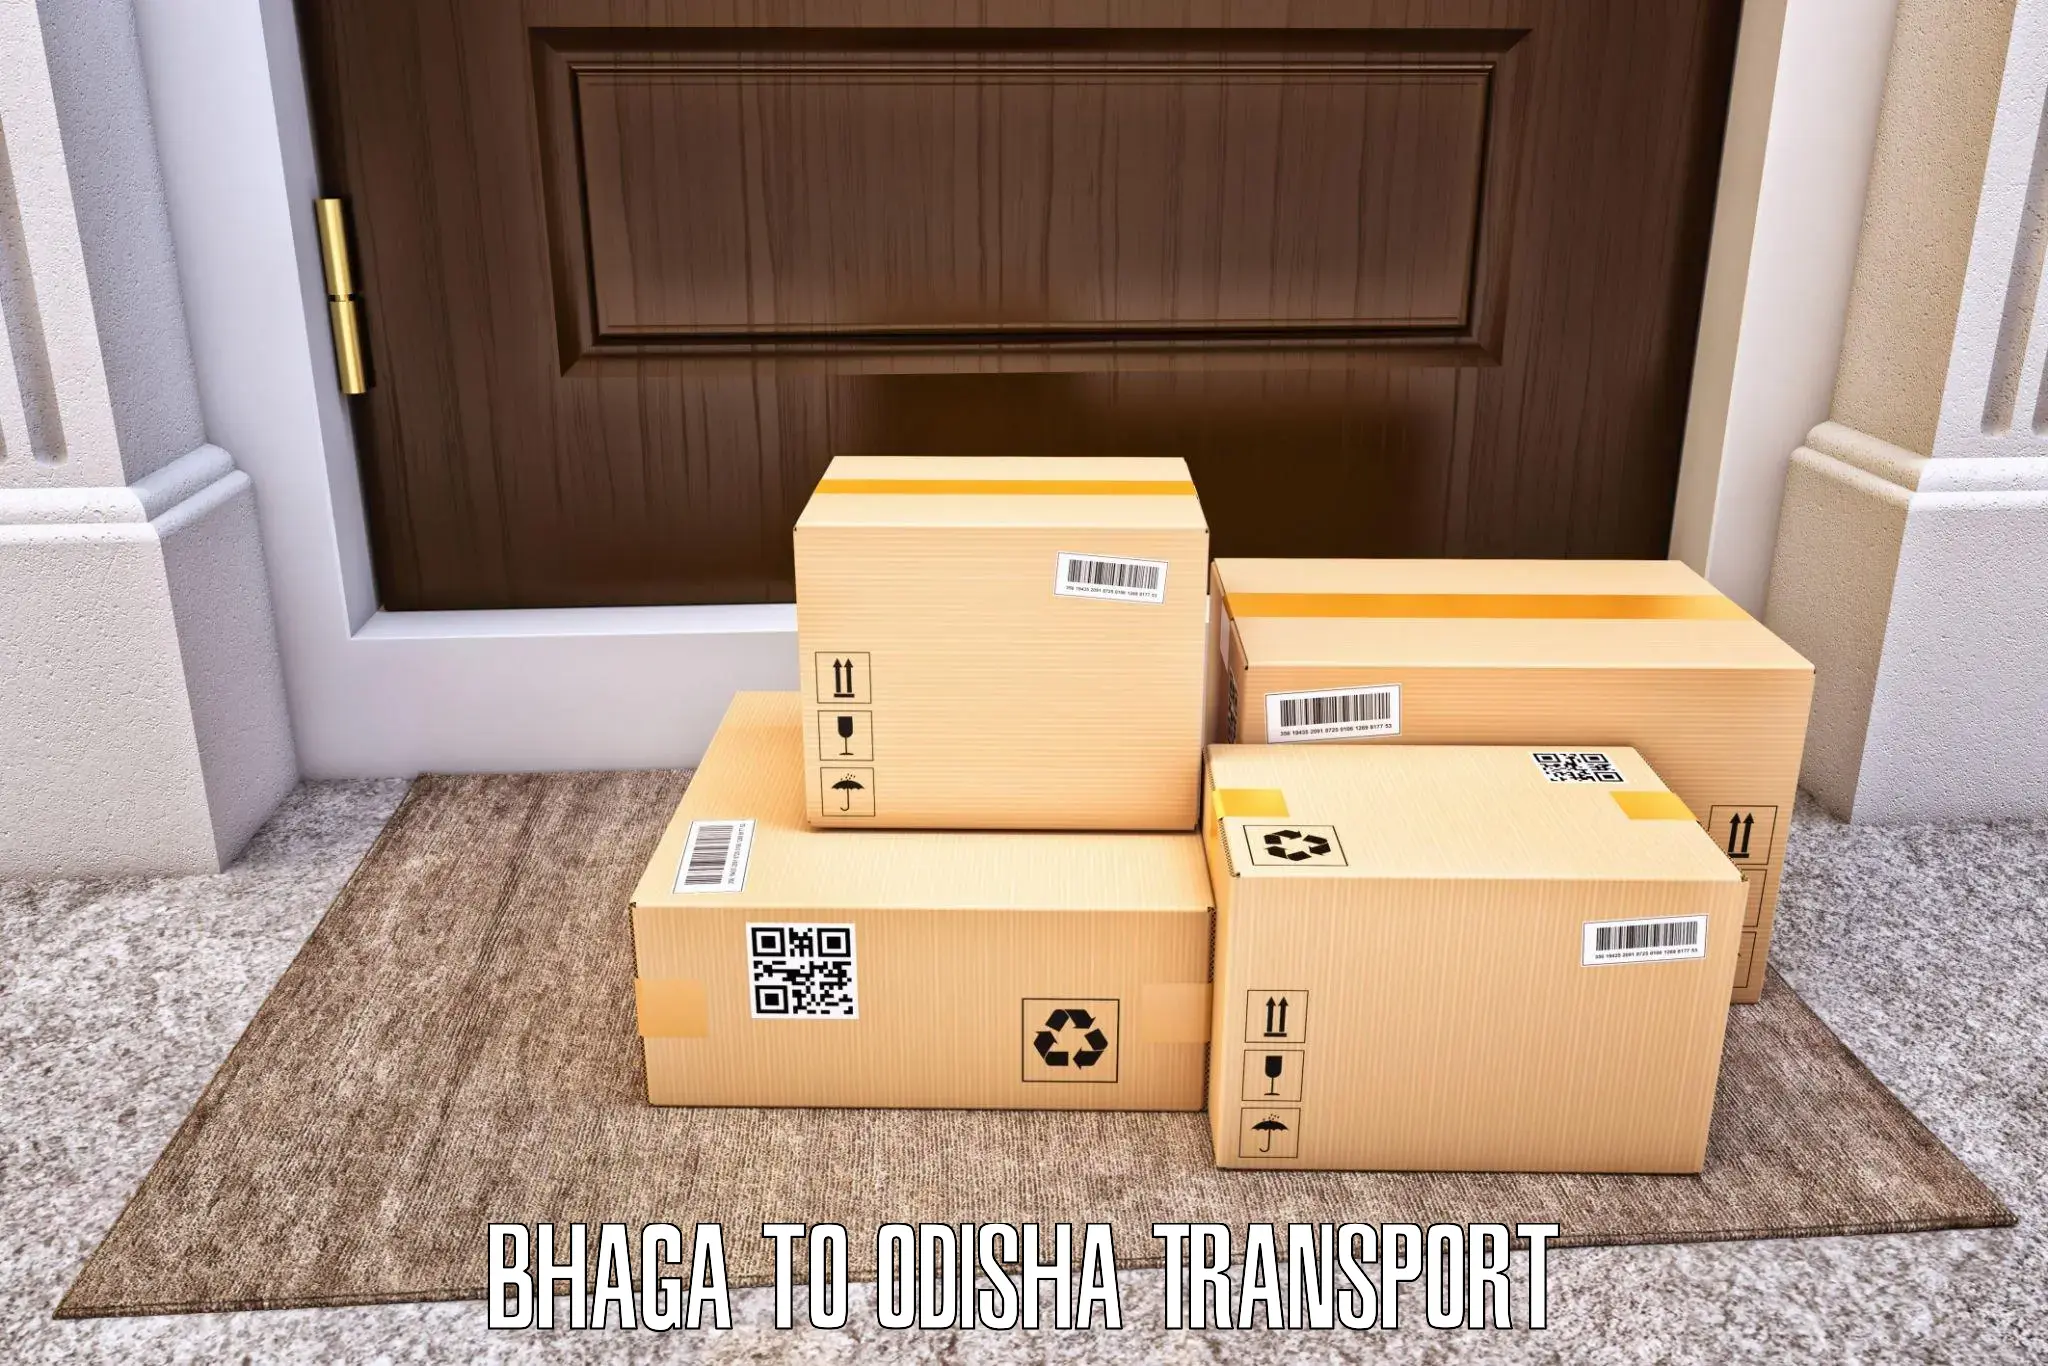 Cargo transportation services Bhaga to Gunupur